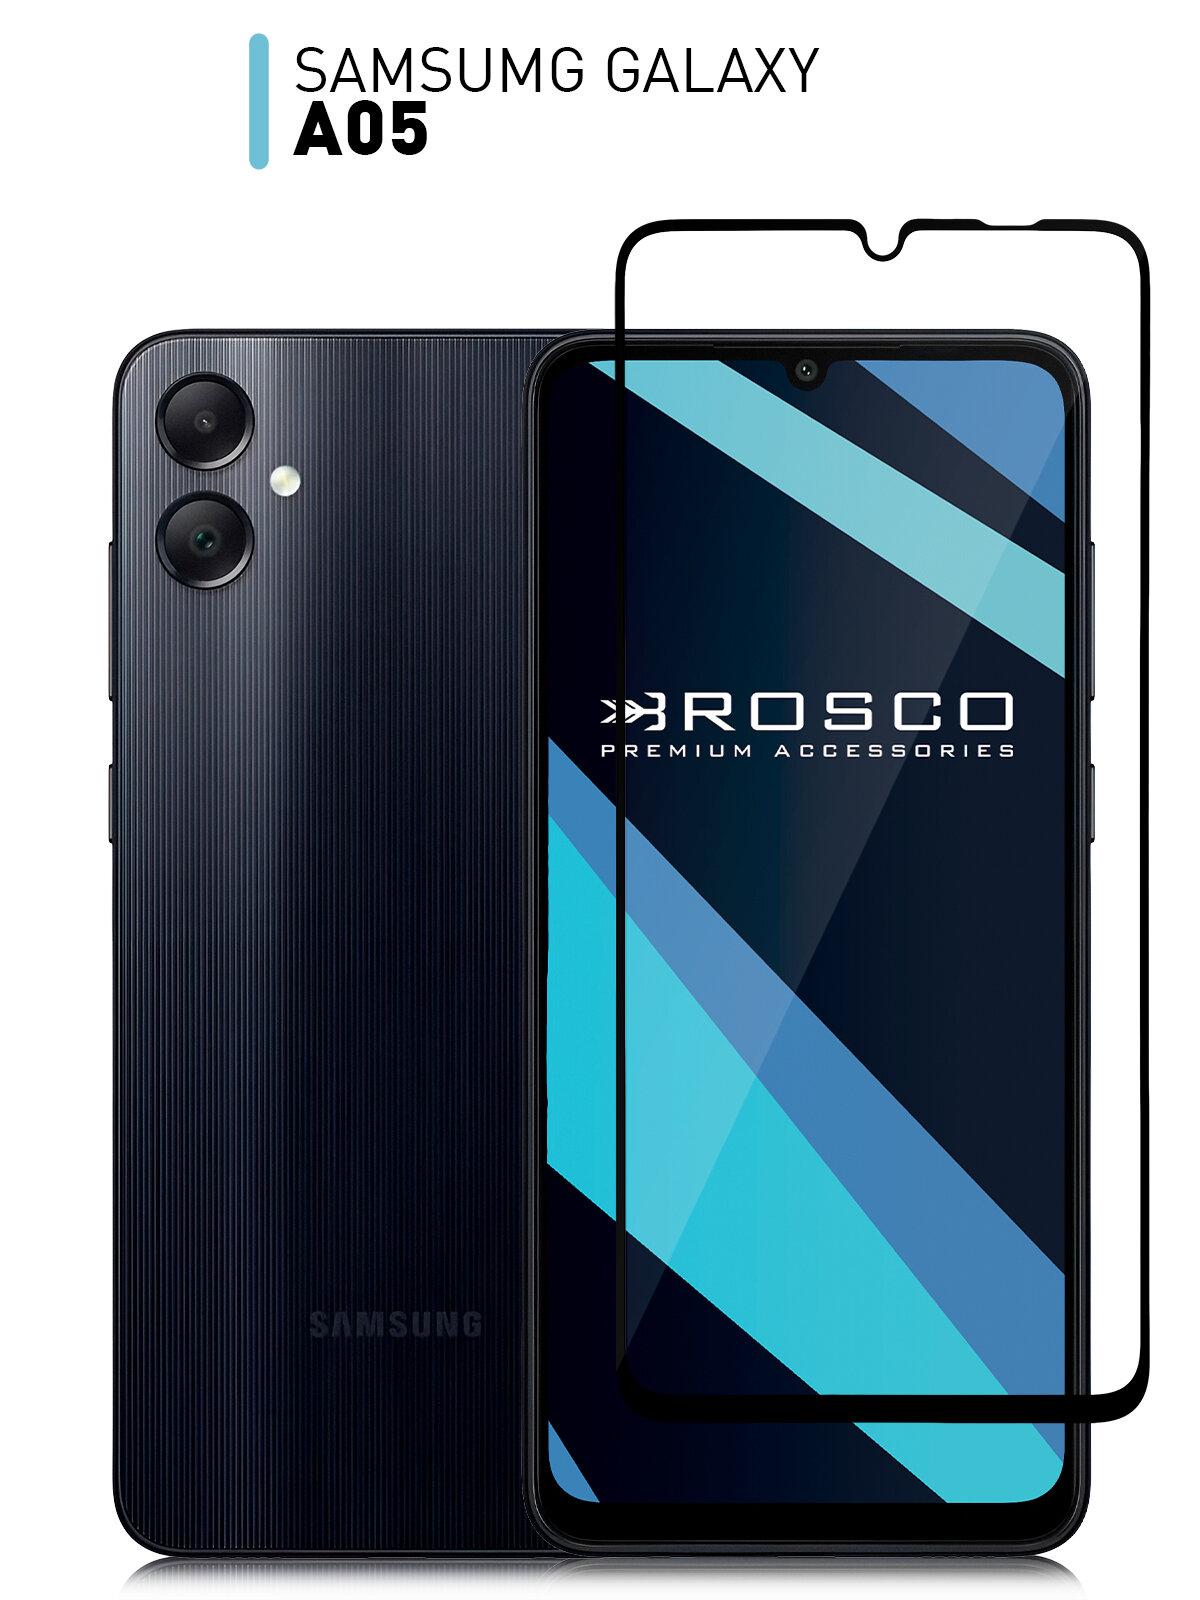 Защитное стекло ROSCO для Samsung Galaxy A05 (Самсунг Галакси А05) противоударное стекло, олеофобное покрытие, прозрачное стекло, с рамкой